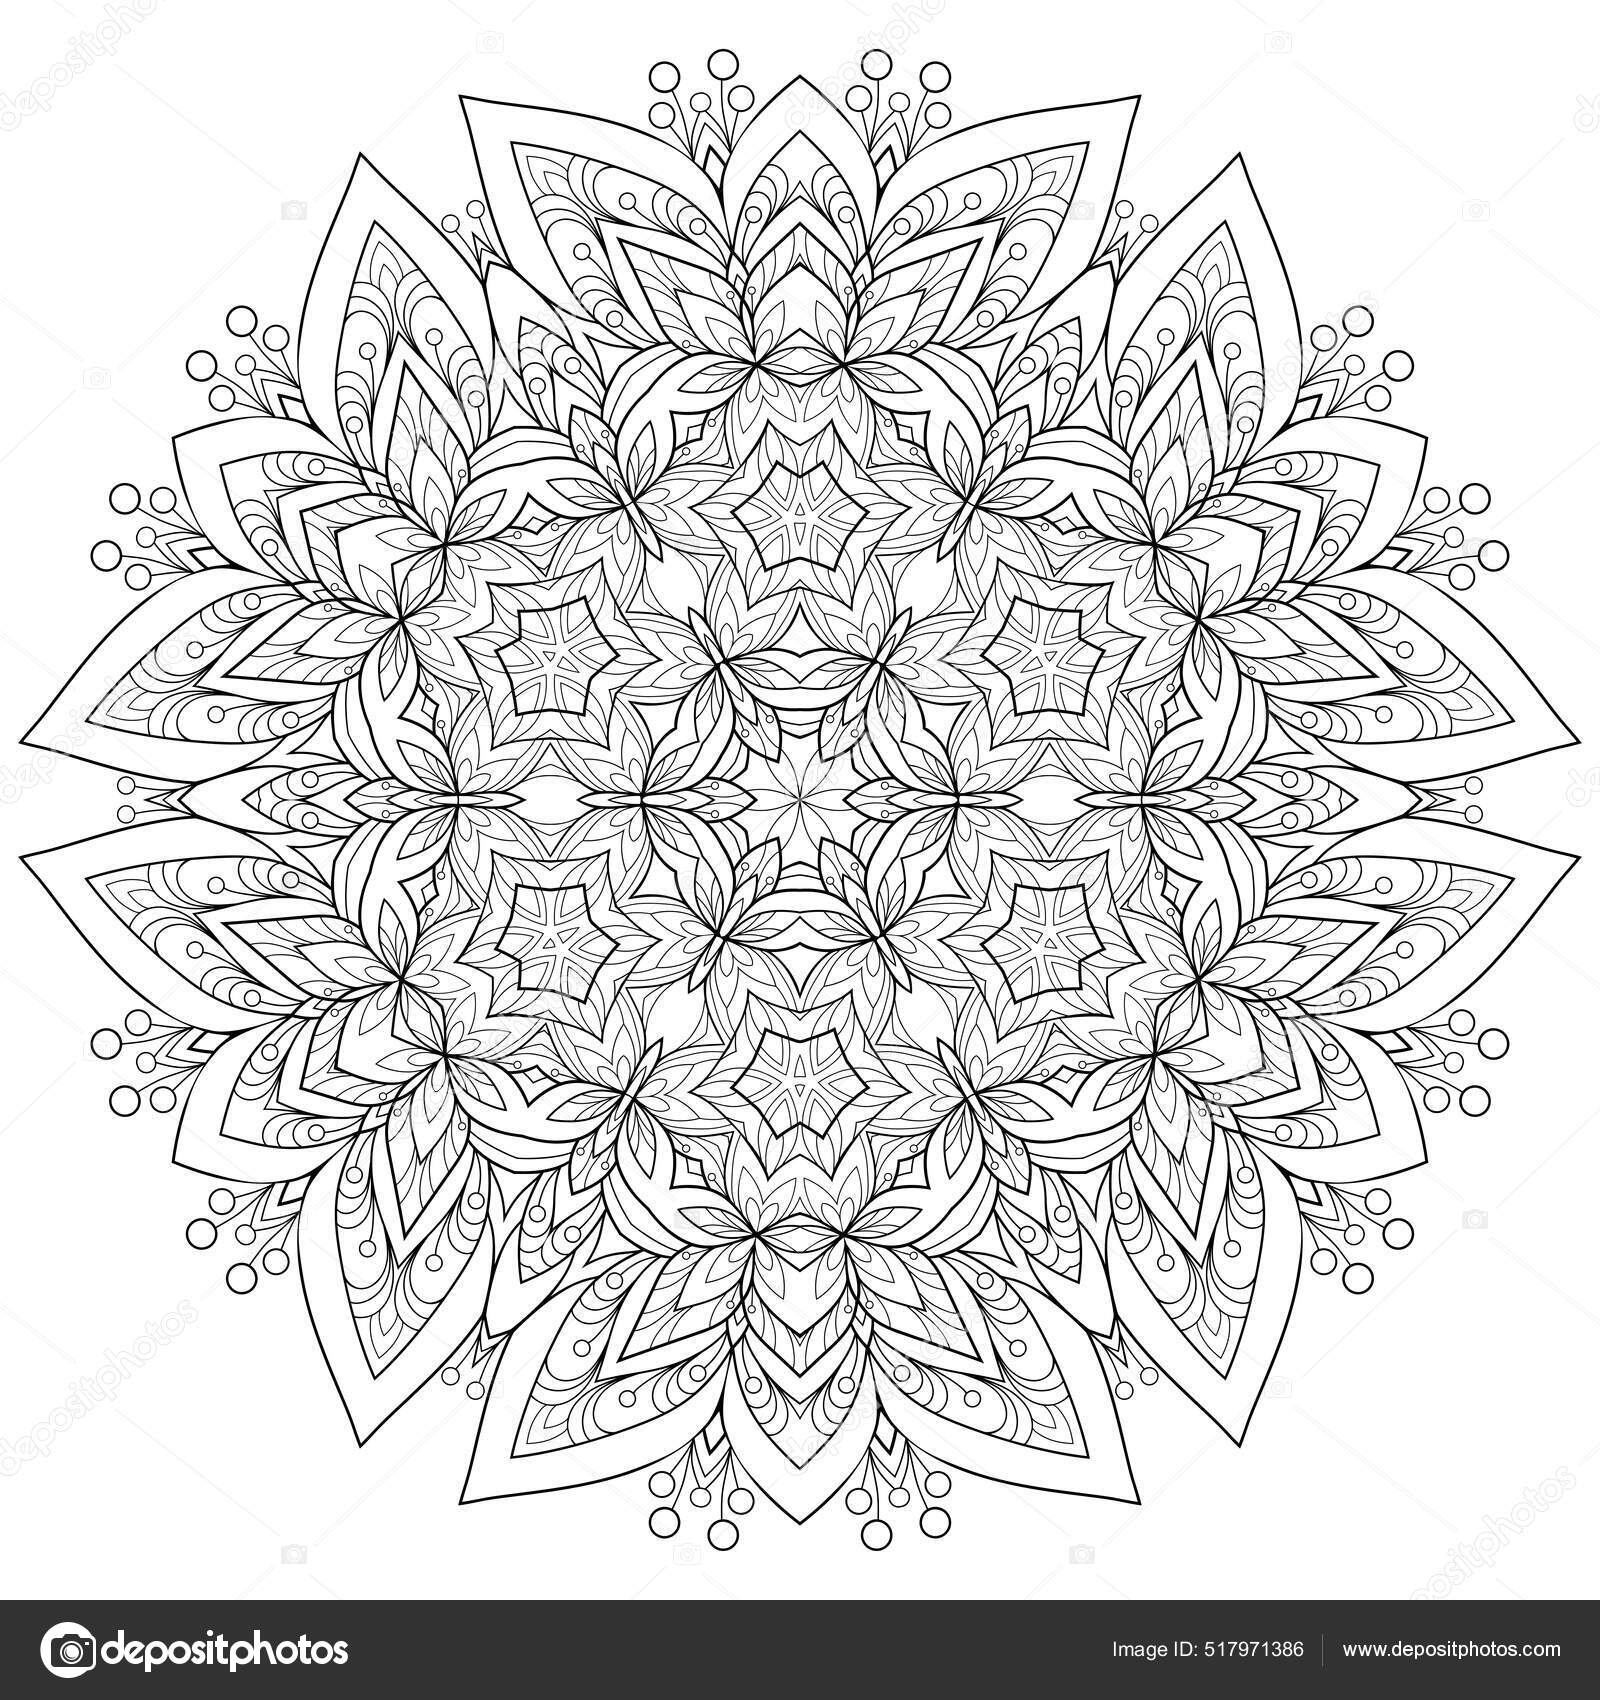 Mandala pattern coloring book wallpaper design Vector Image